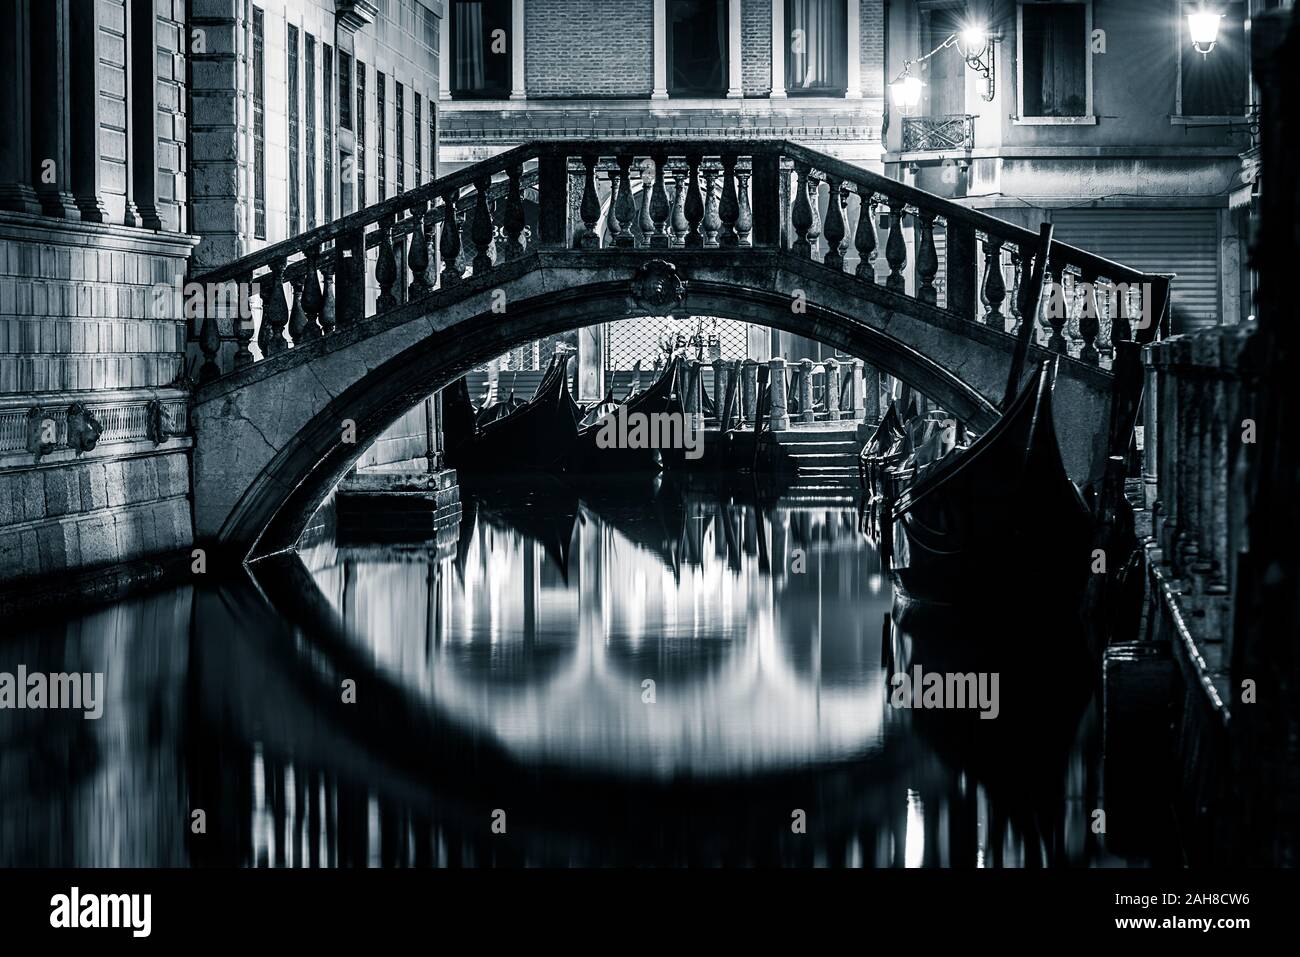 Ikonische schwarz-weiße Nachtaufnahme eines venezianischen Kanals mit Gondeln über Wasser und einer Marmorbrücke, die sich auf dem Wasser spiegelt Stockfoto